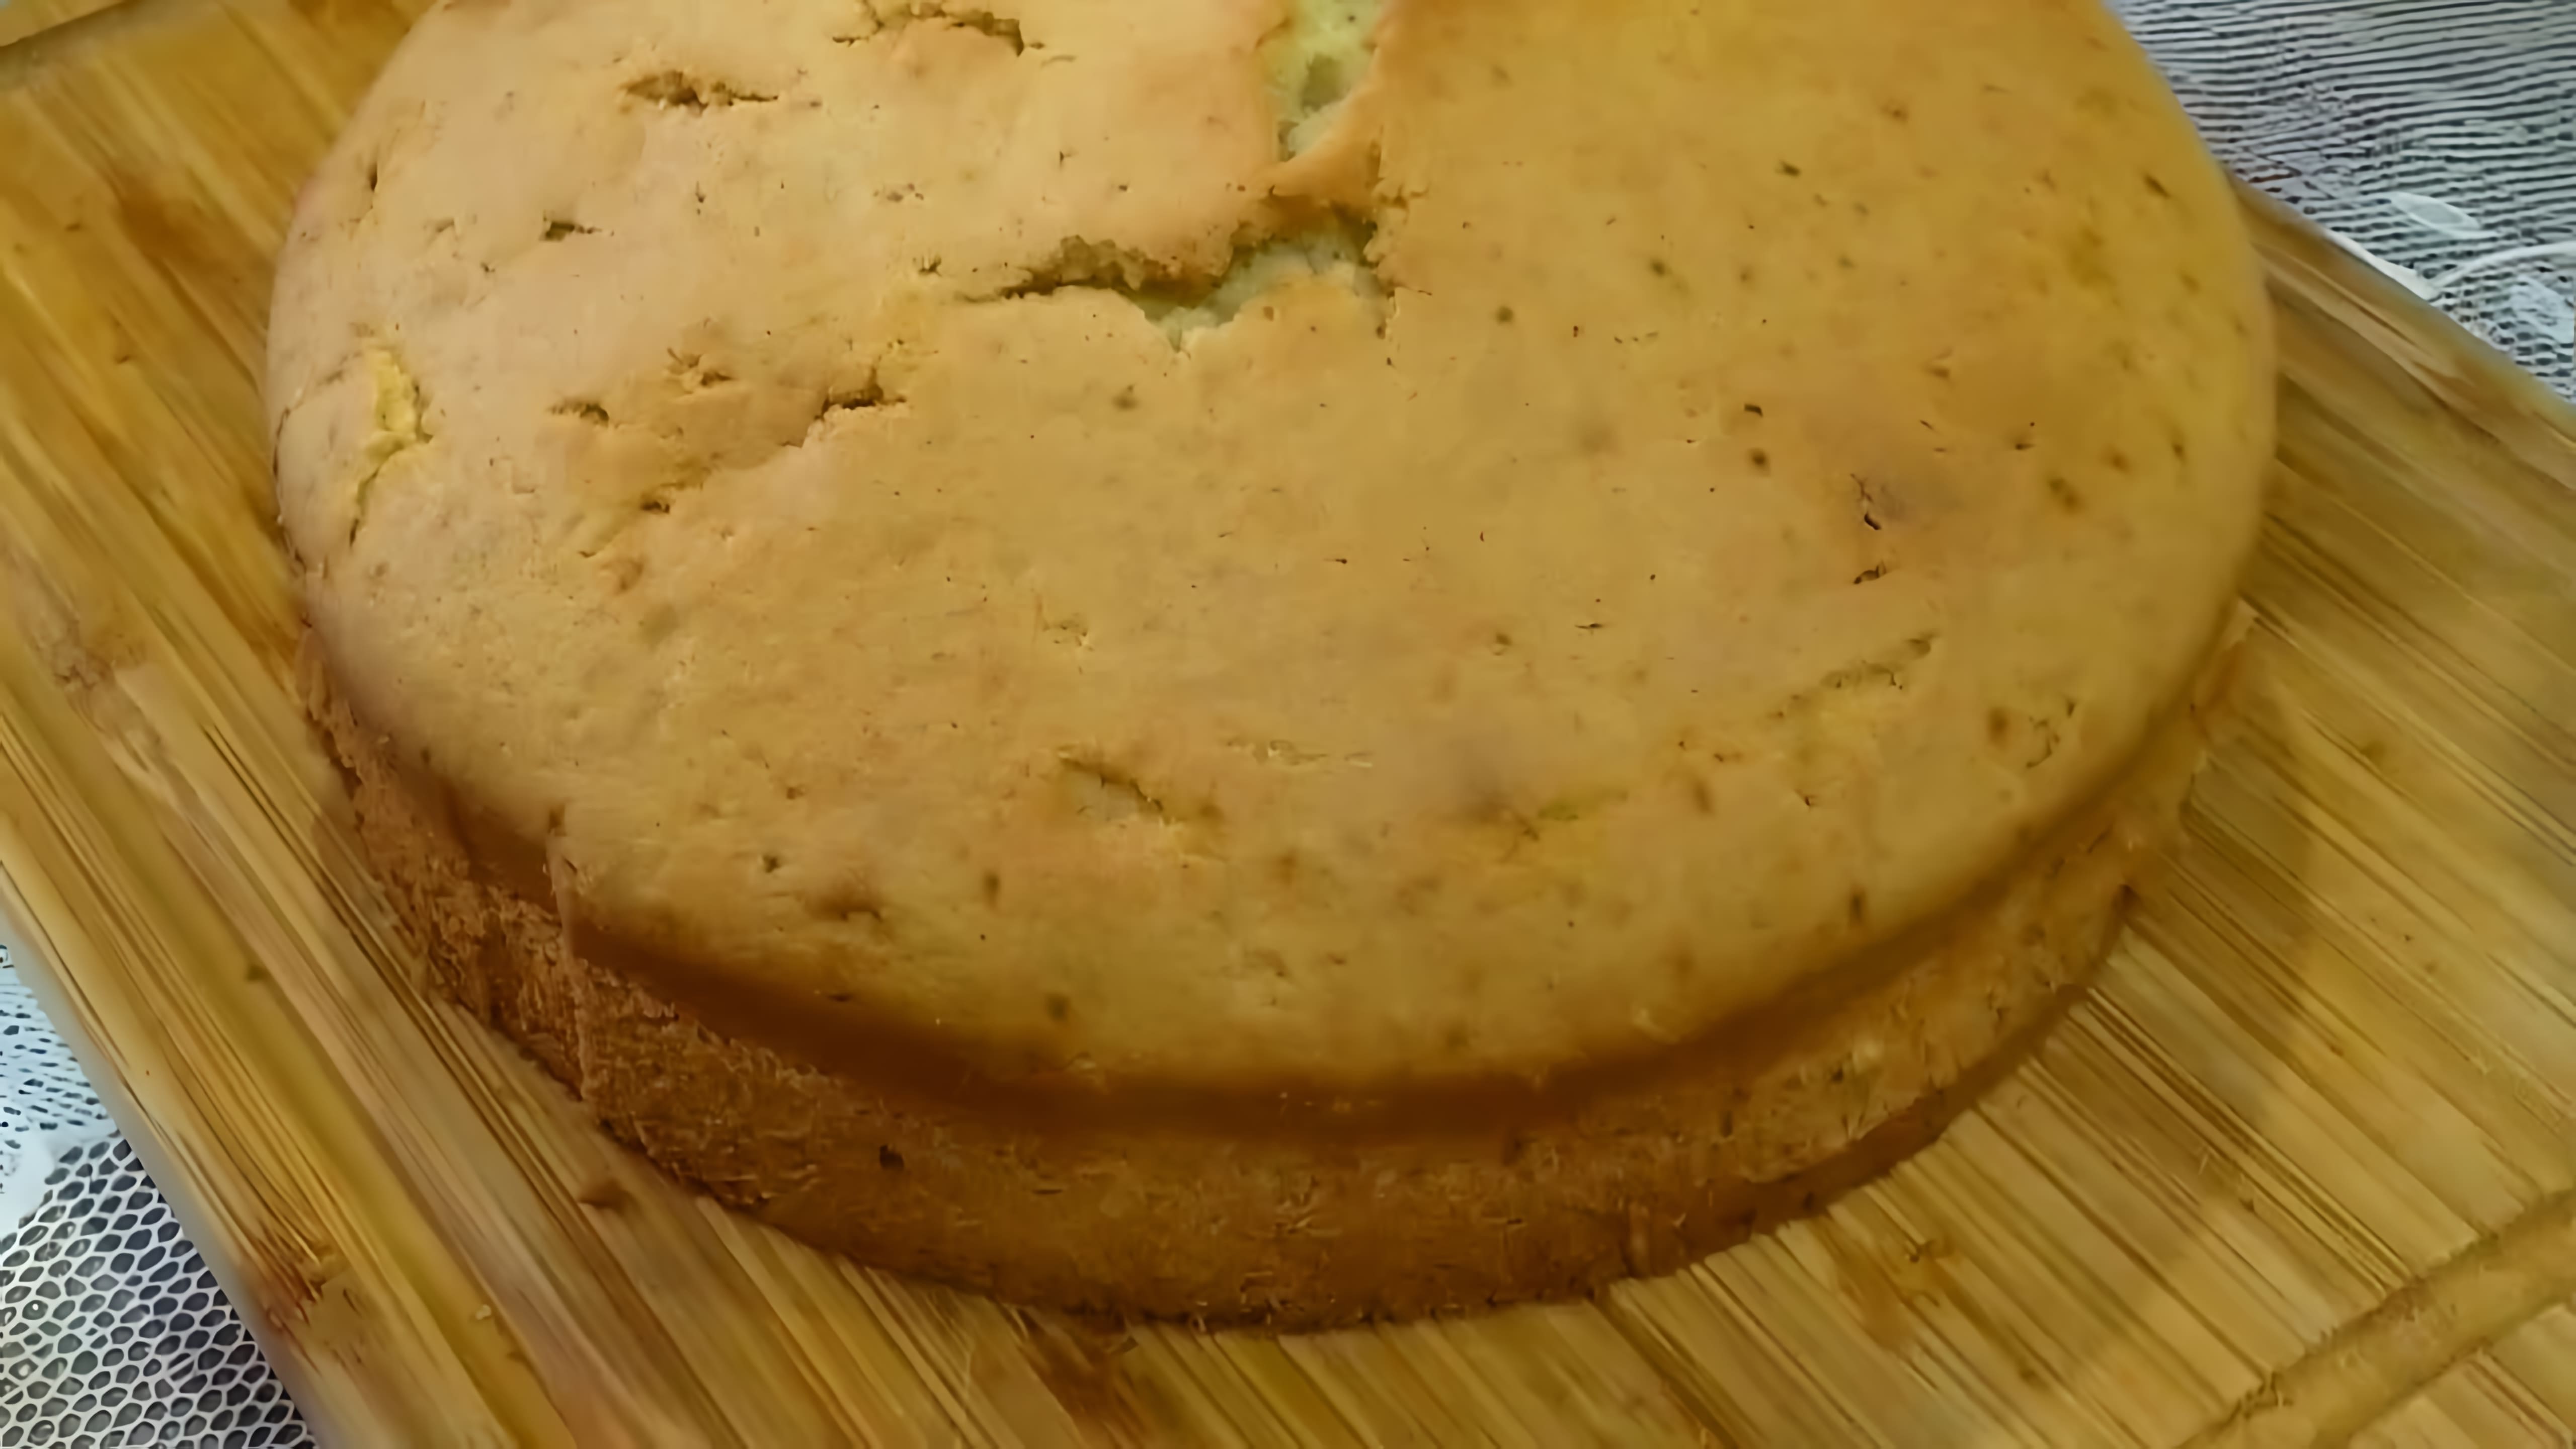 В этом видео демонстрируется рецепт приготовления бисквита без использования миксера